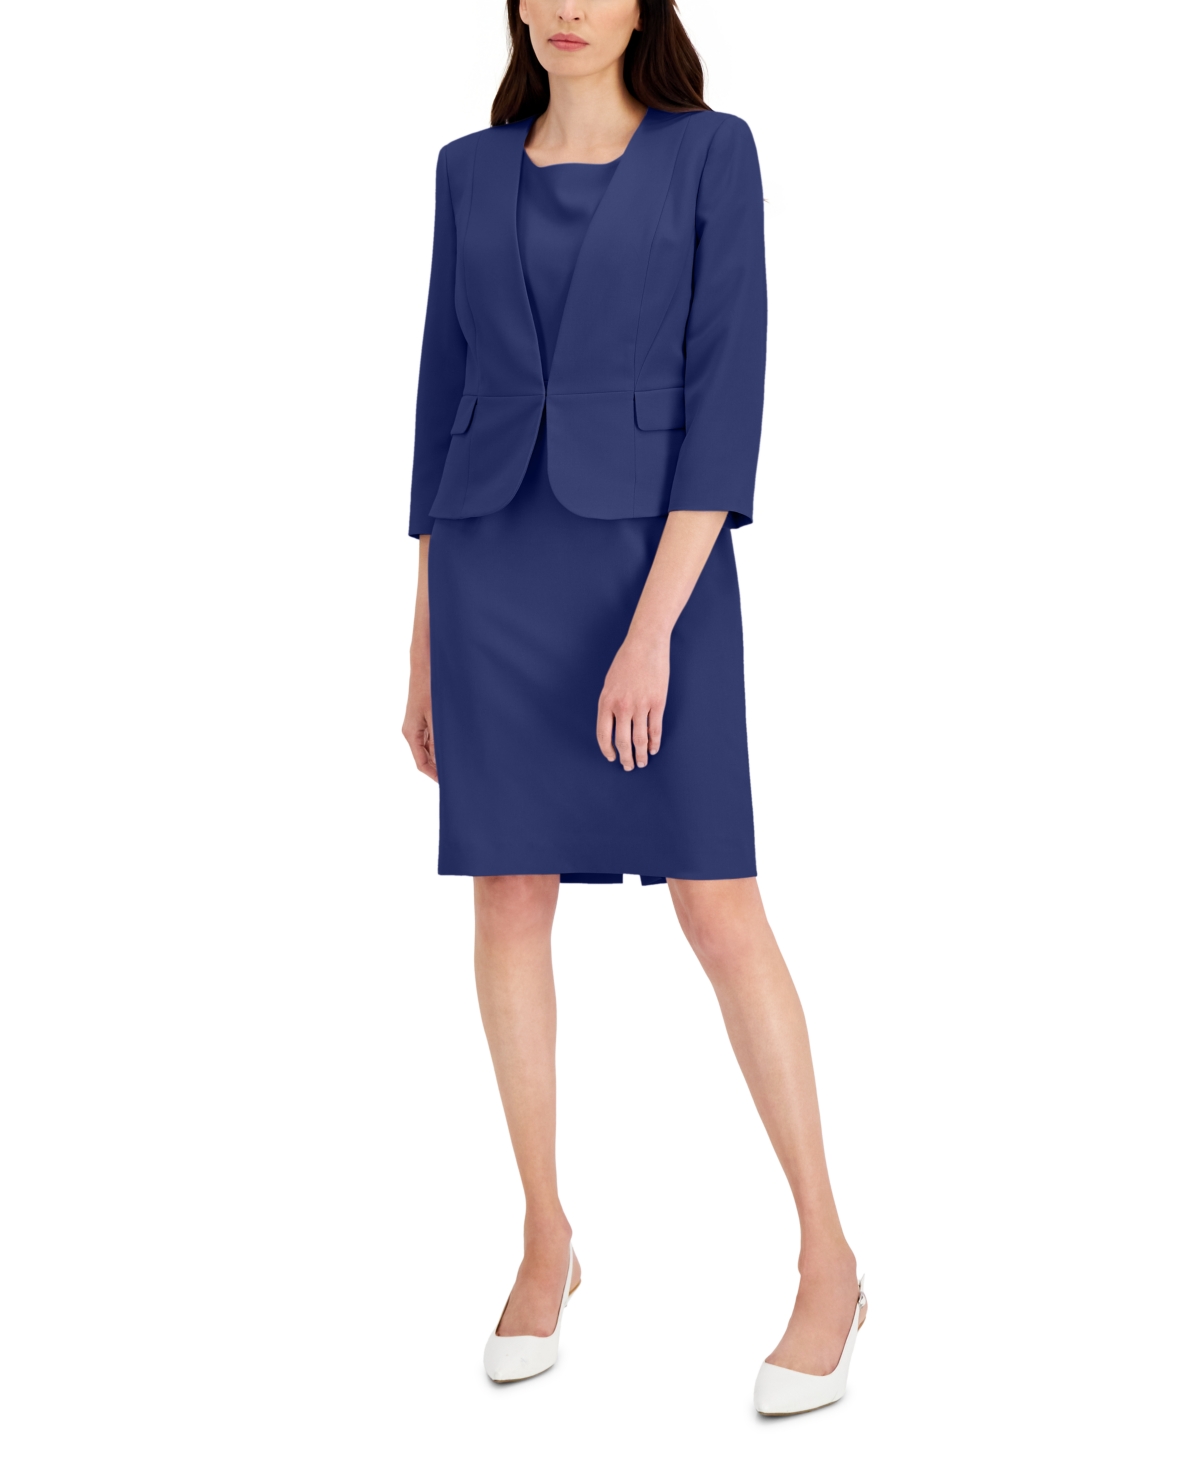 Le Suit Women's Open-Front Sheath Dress Suit, Regular and Petite Sizes